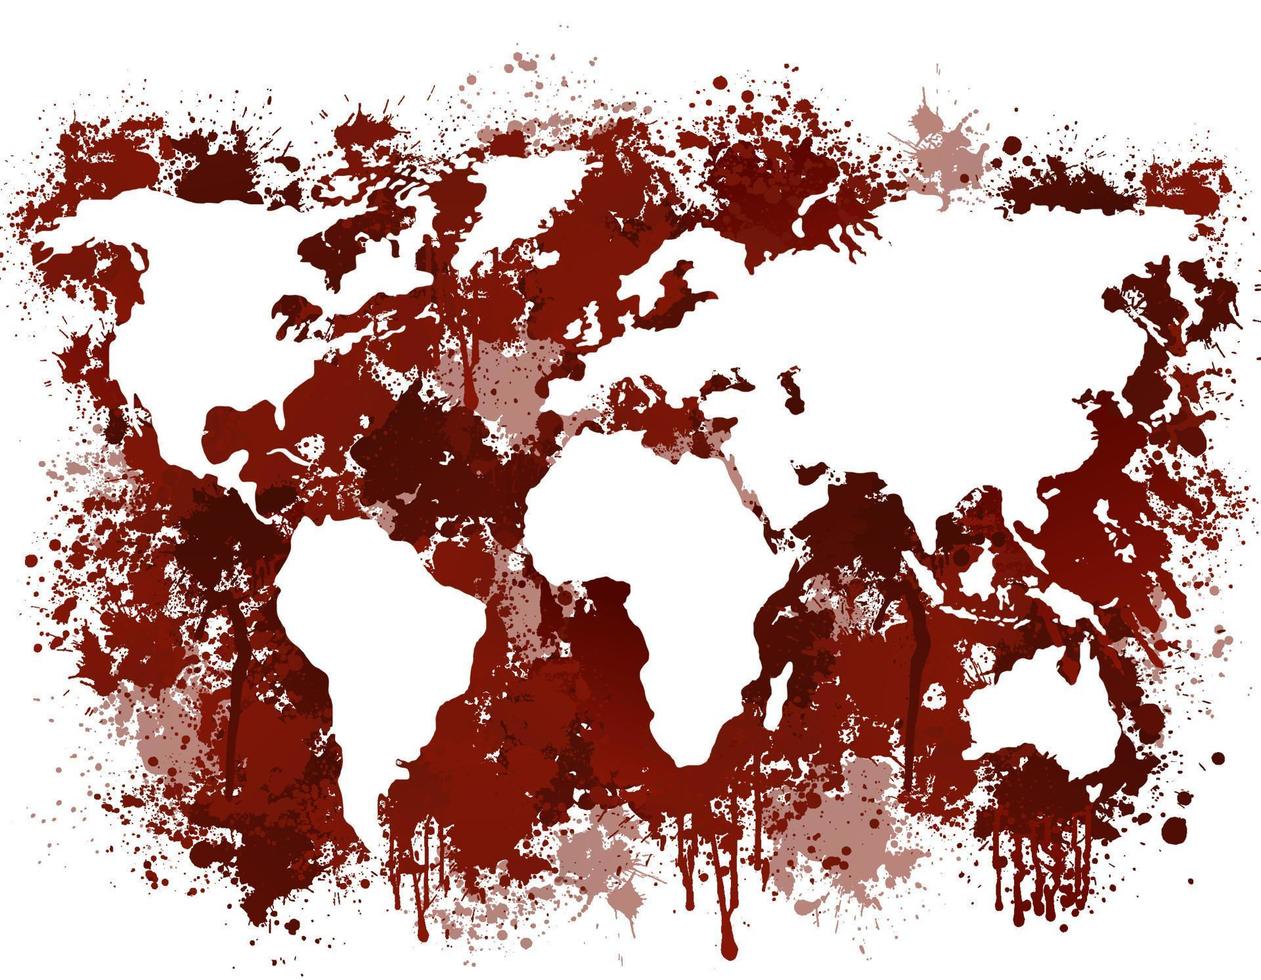 carte de la terre sanglante. des continents rouges striés de sang d'horribles meurtres. vecteur